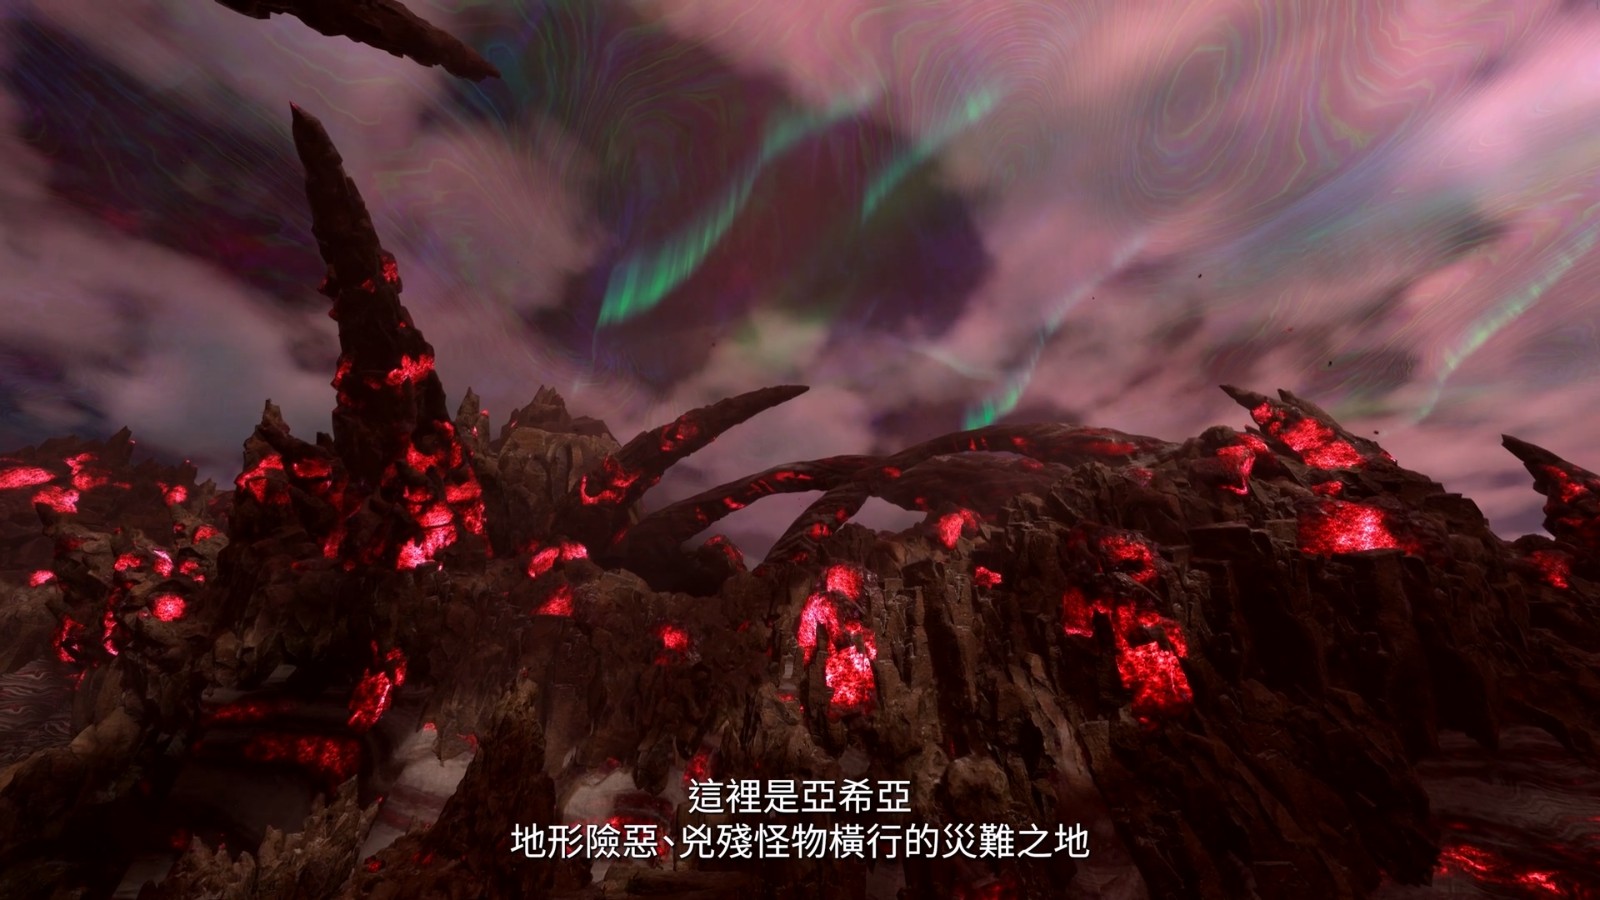 《魔咒之地》“魔法战斗”介绍视频 中文字幕